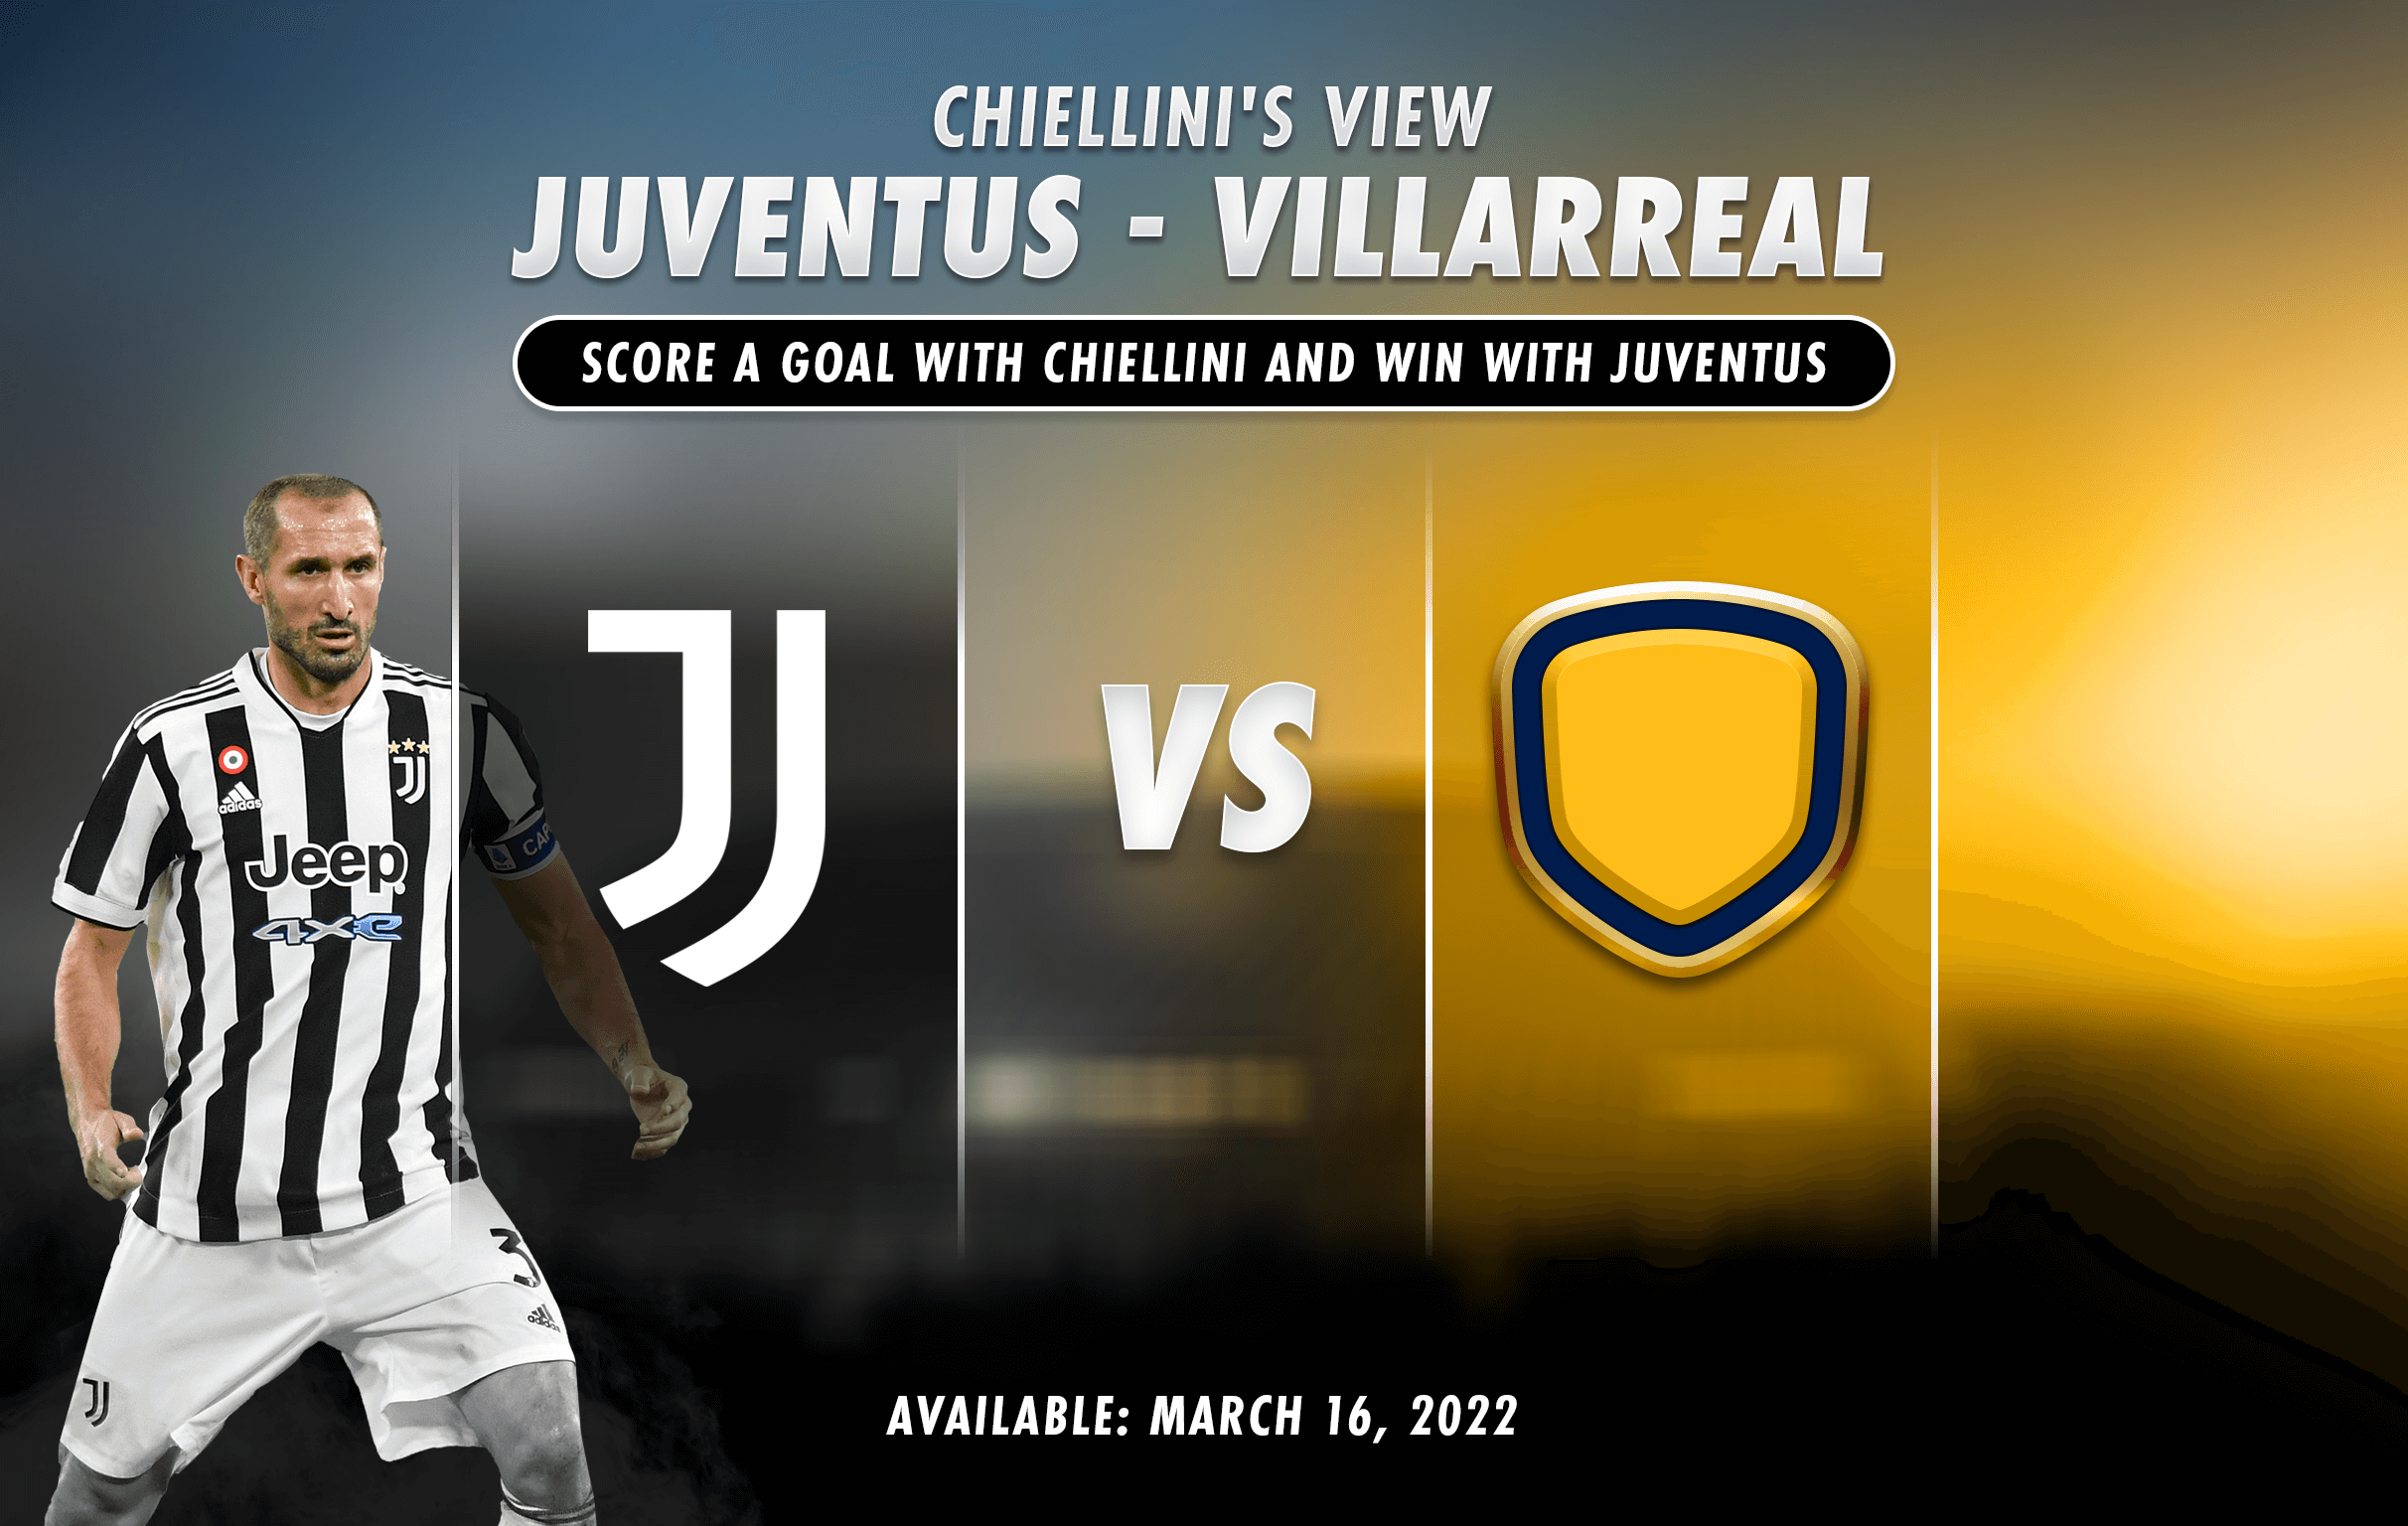 CP_Chiellinis View Juve Villa_REDDIT.png